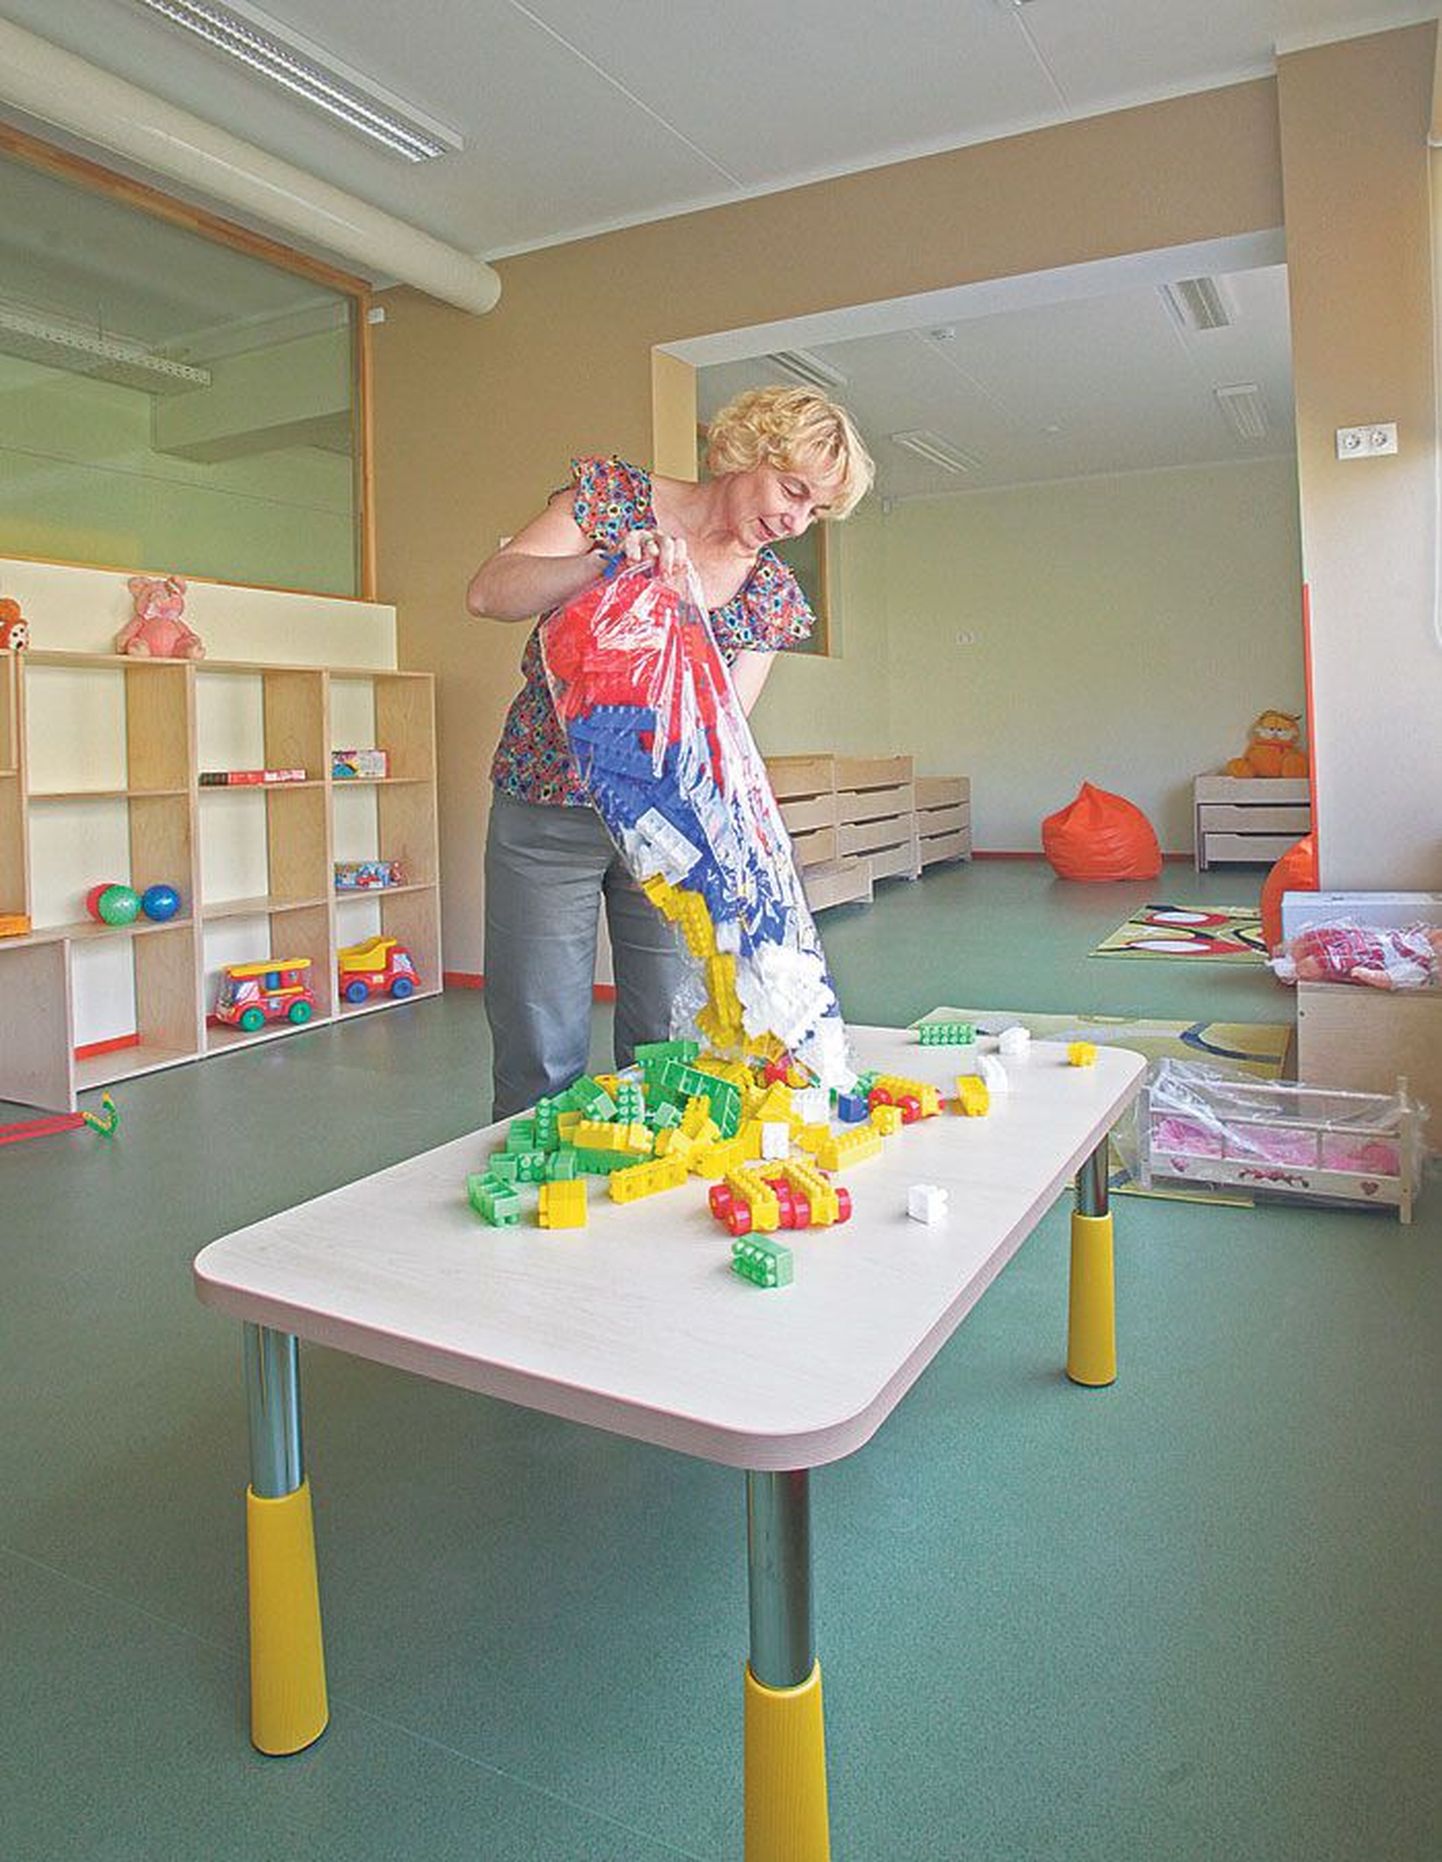 Tähtvere lasteaia õppejuhataja Elena Laane lasteaia õuepaviljoni asemele ehitatud sõimerühmas, kus septembris alustab oma mängupäevi 14 mudilast.